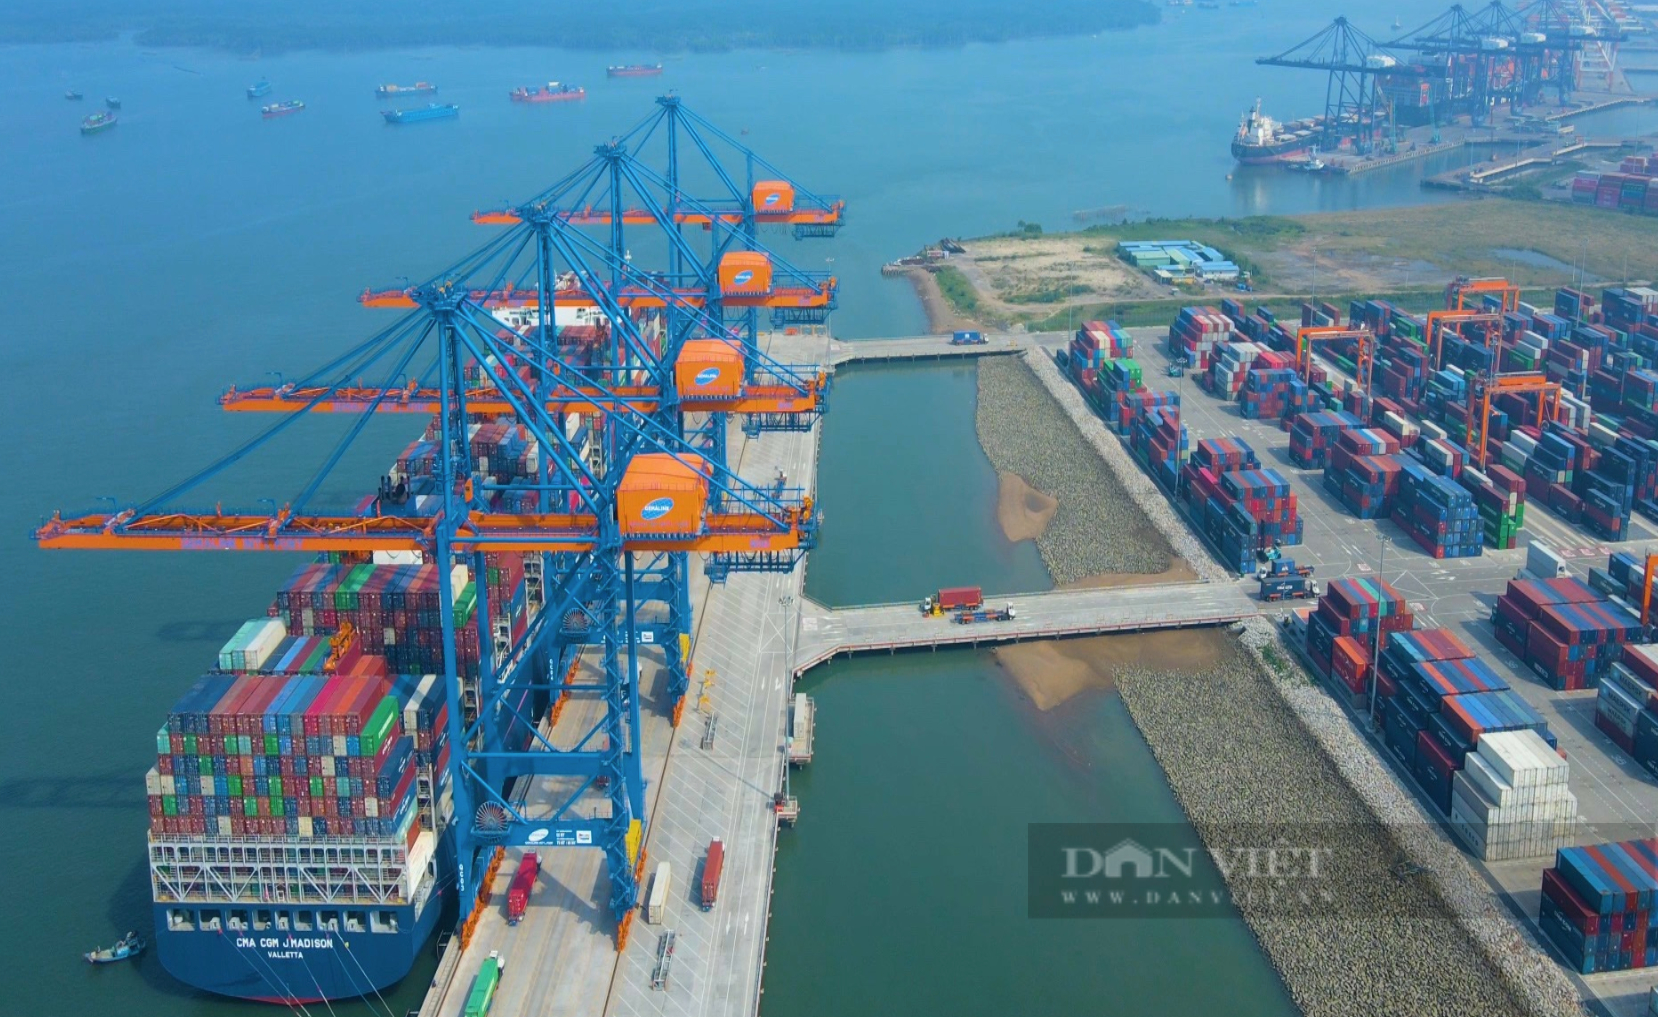 Bà Rịa - Vũng Tàu: Tận dụng tài nguyên biển, “siêu cảng” để sớm thành trung tâm kinh tế biển quốc gia - Ảnh 4.